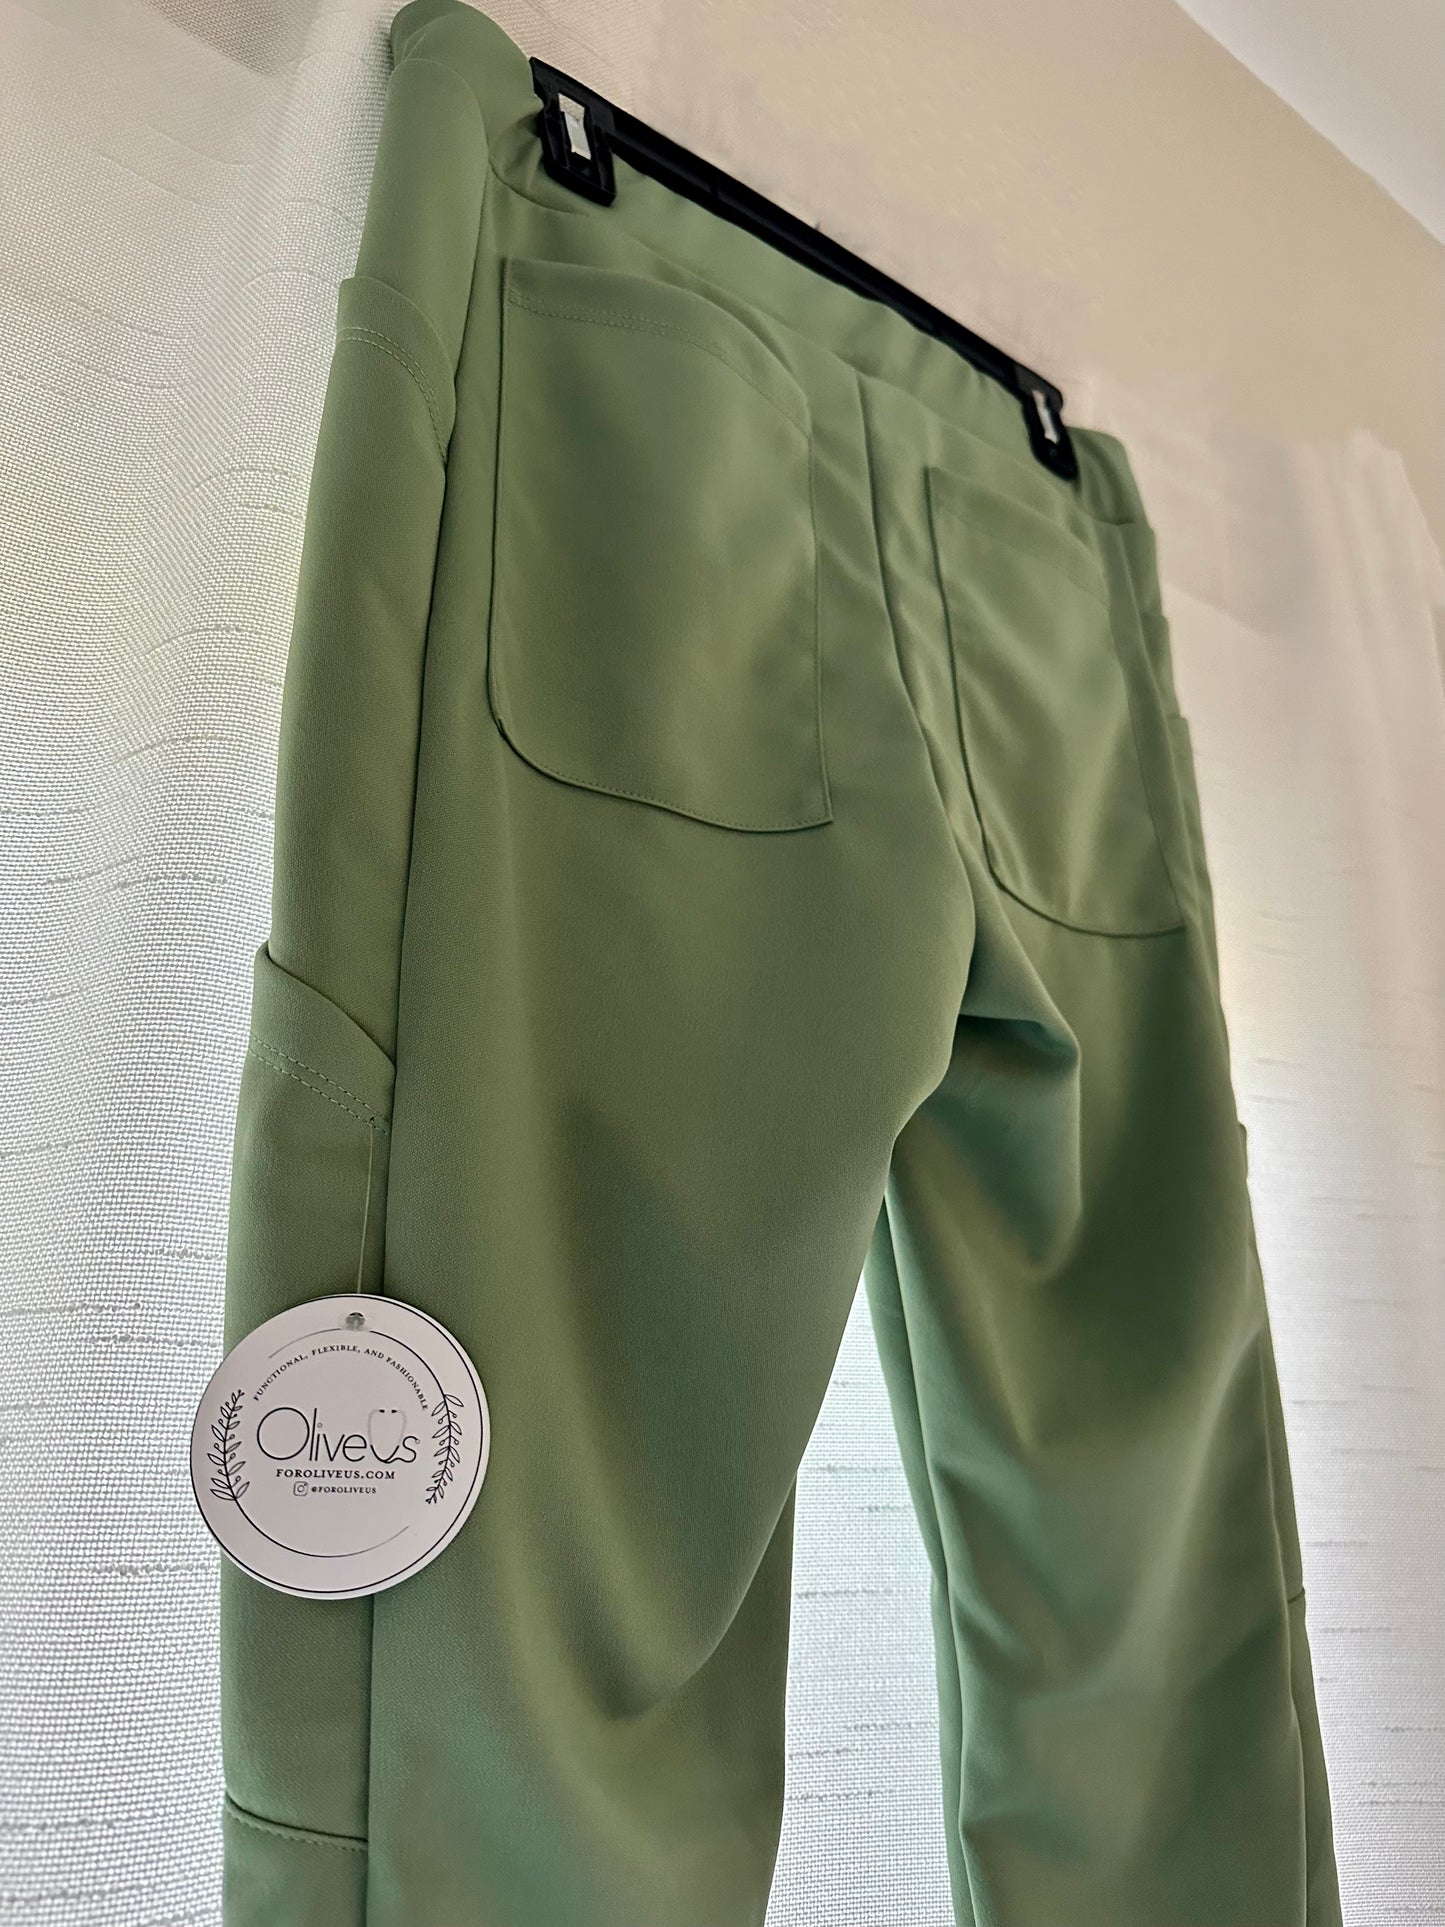 Men's Pants in Olive Green